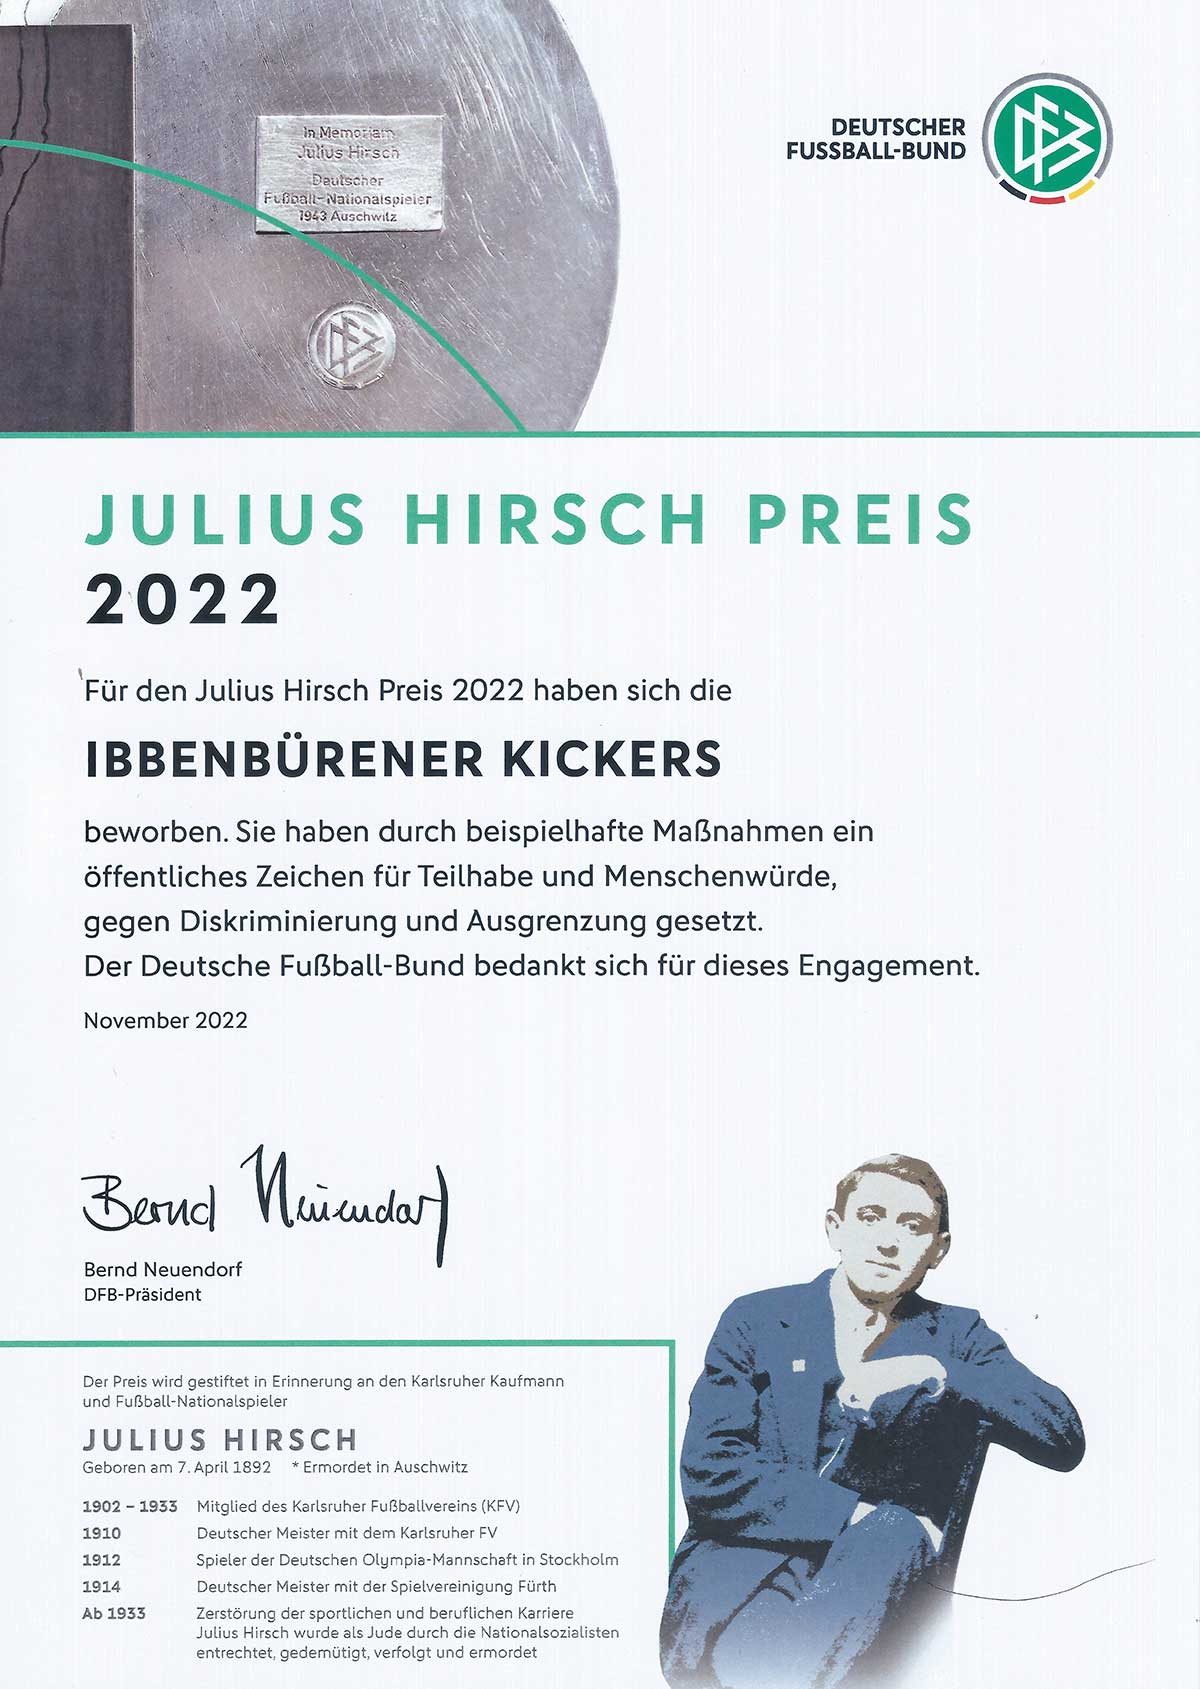 Abbildung zeigt: Die Julius-Hirsch Urkunde 2022 für die Ibbenbürener Kickers - Eine Auszeichnung für ihr vorbildliches Engagement.